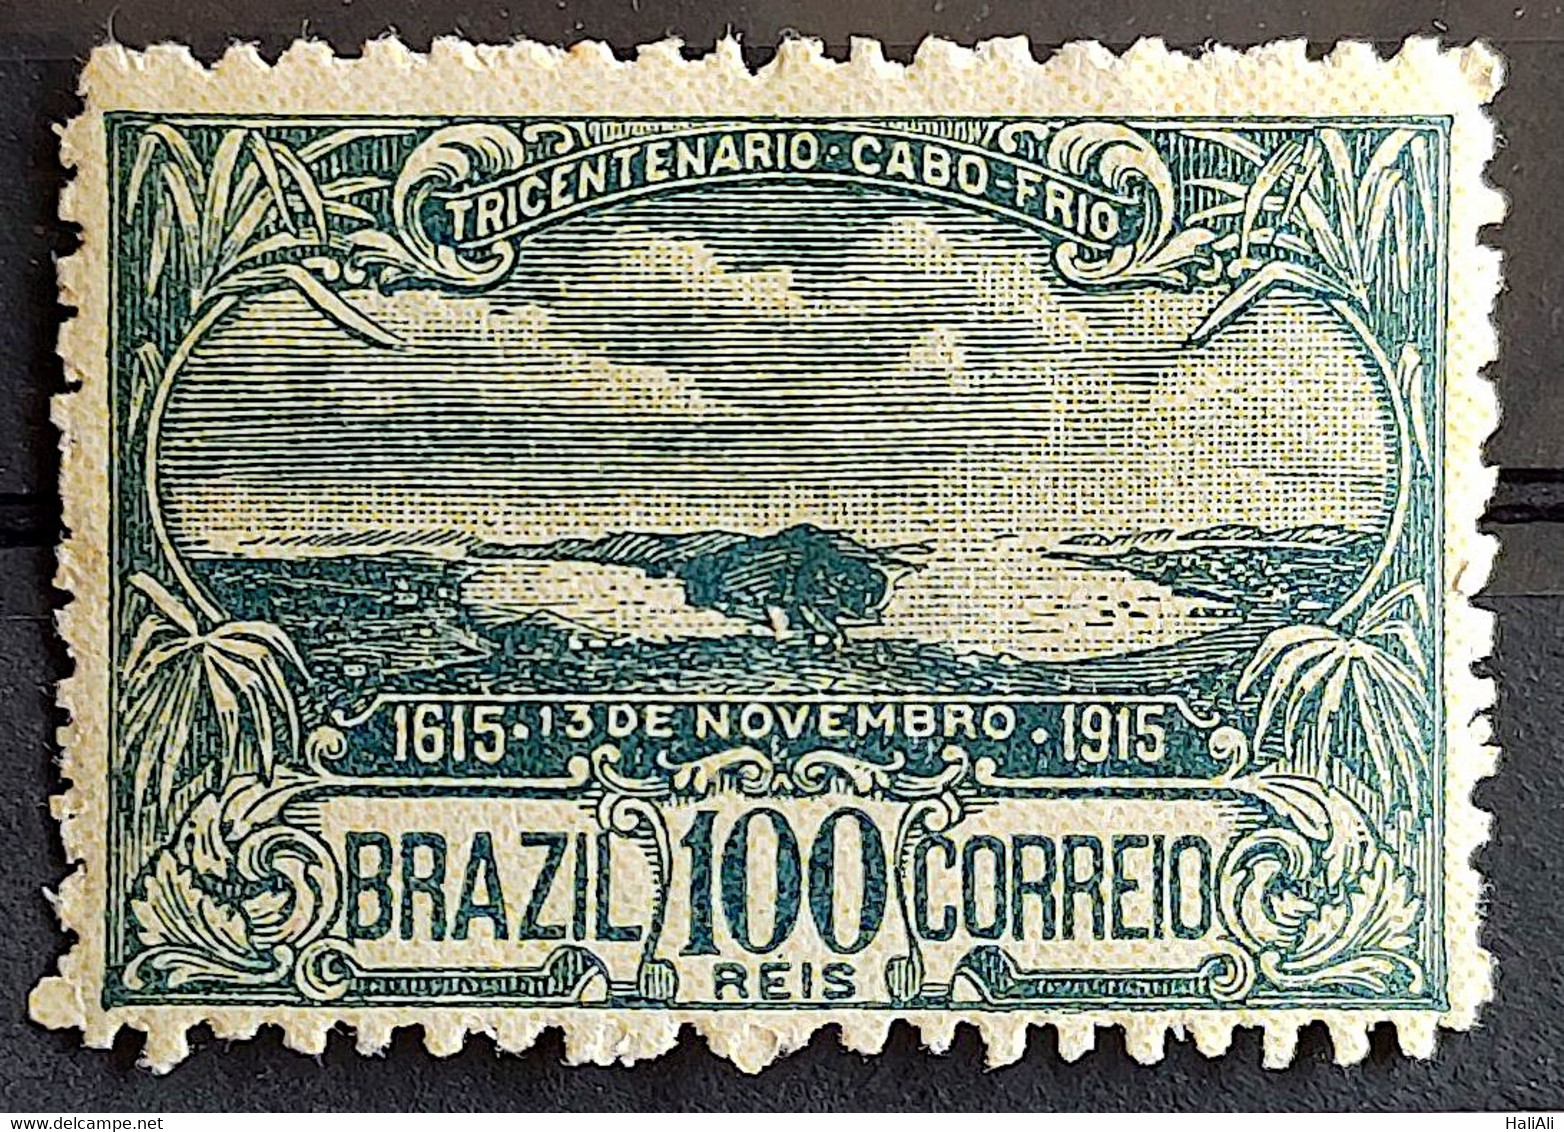 C 10 Brazil Stamp Tricentenary Cabo Frio 1915 6 - Nuevos